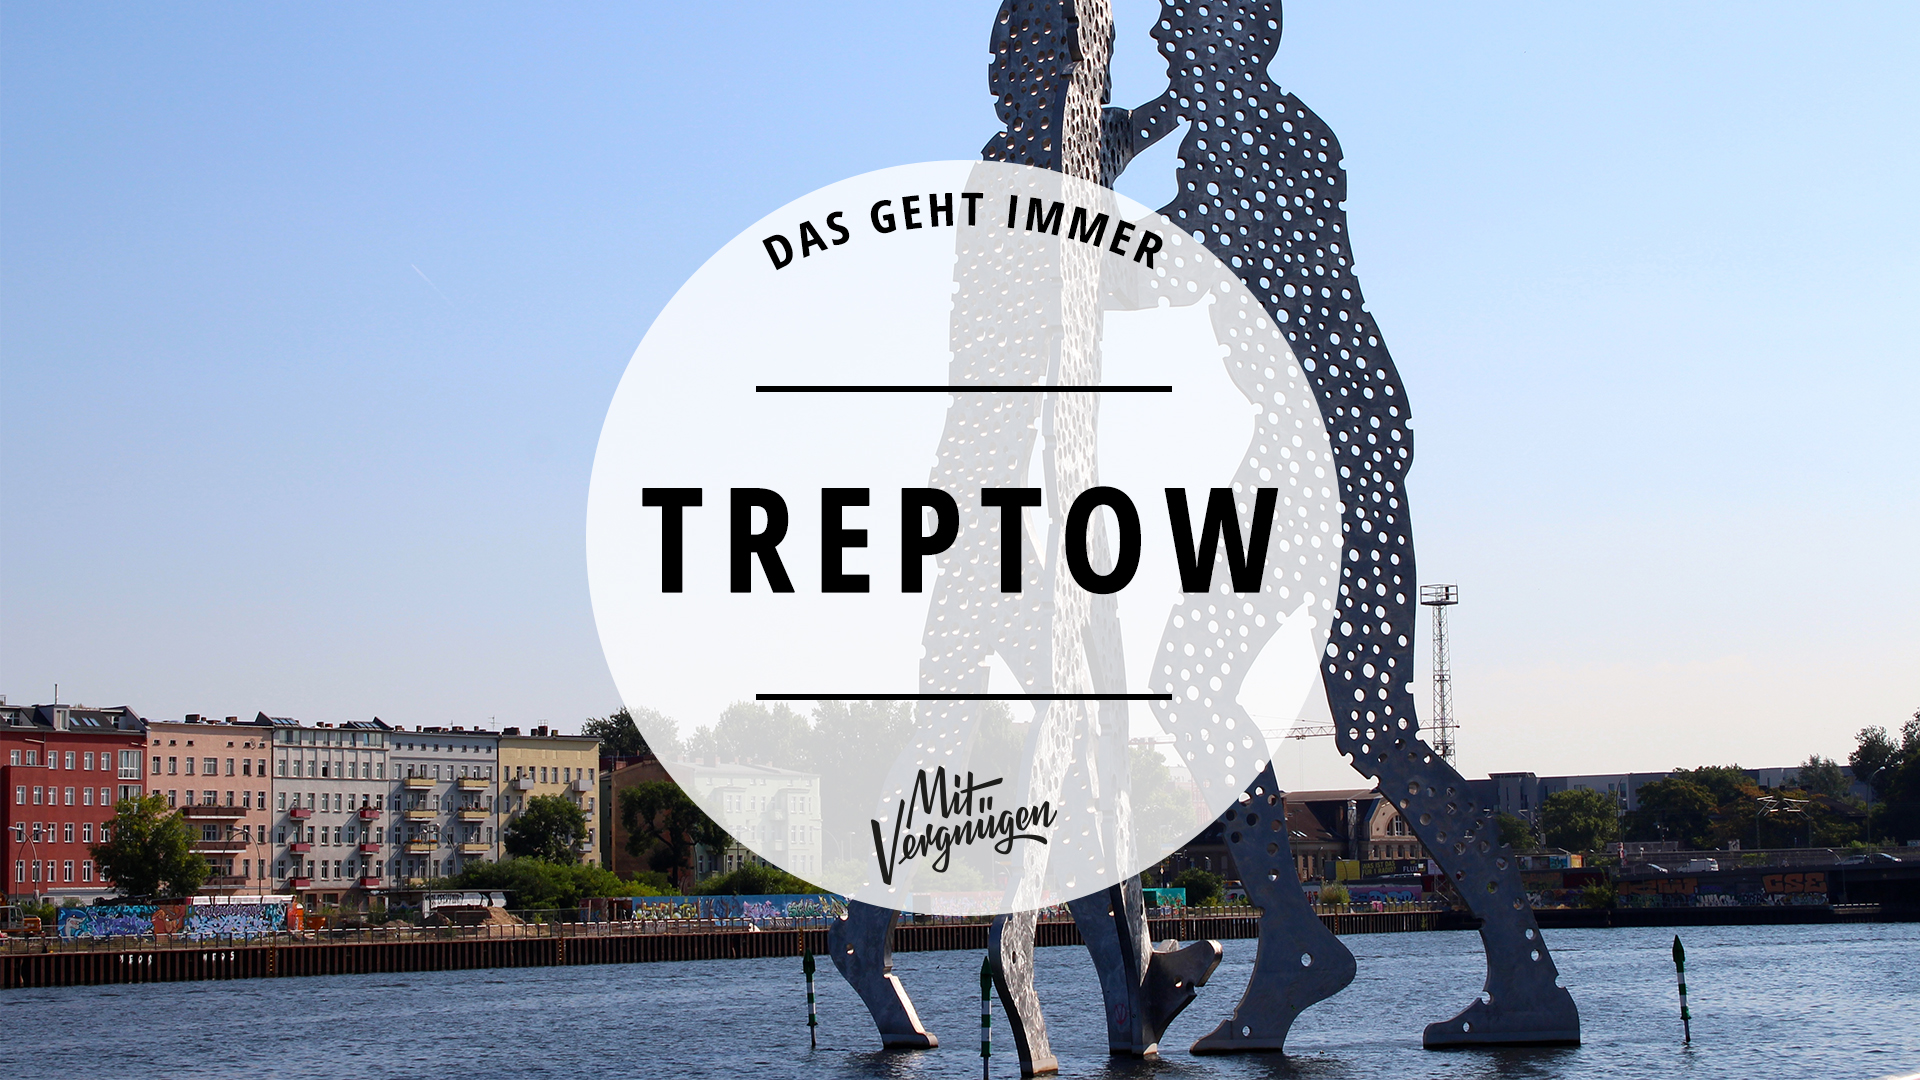 11 Orte In Treptow Die Ihr Kennen Solltet Mit Vergnügen Berlin